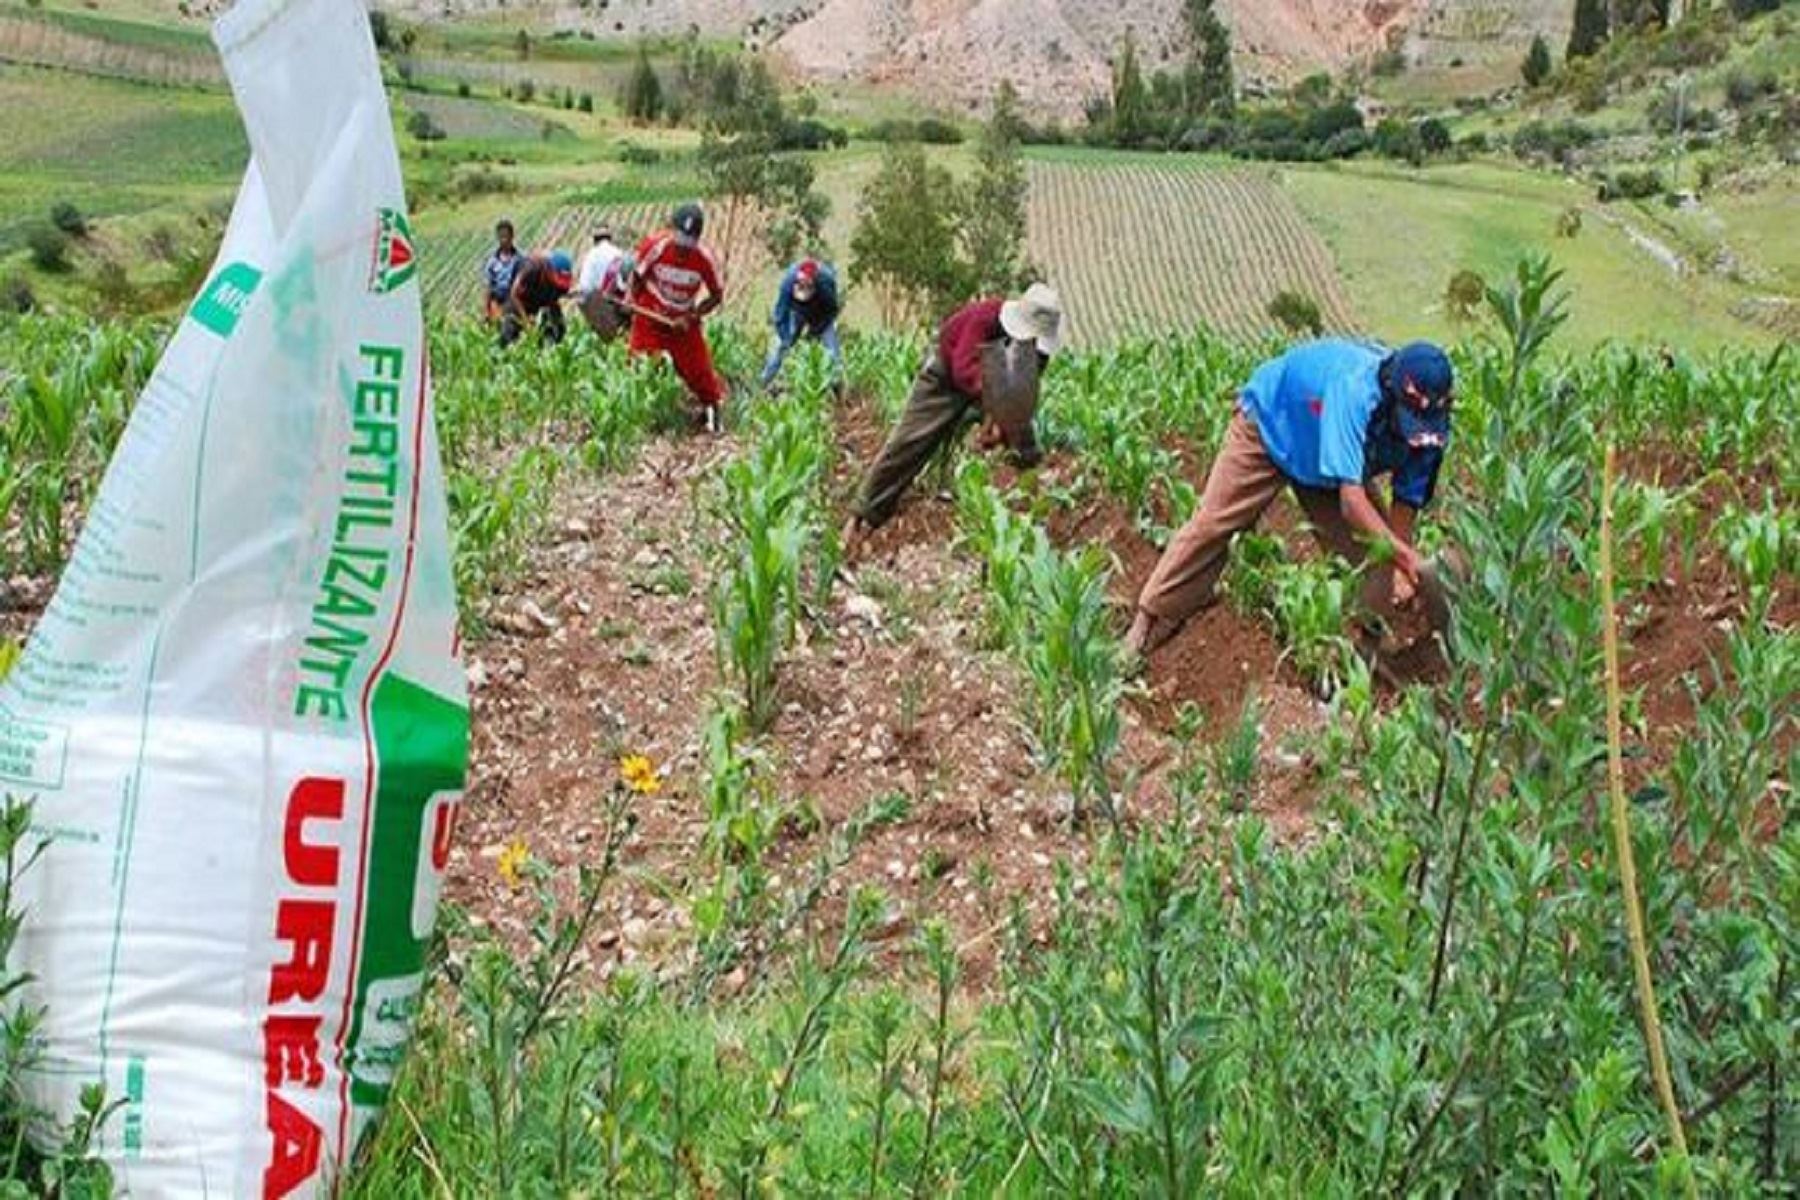 Fertilizantes: Perú invita empresas internacionales a presentar ofertas para adquisición